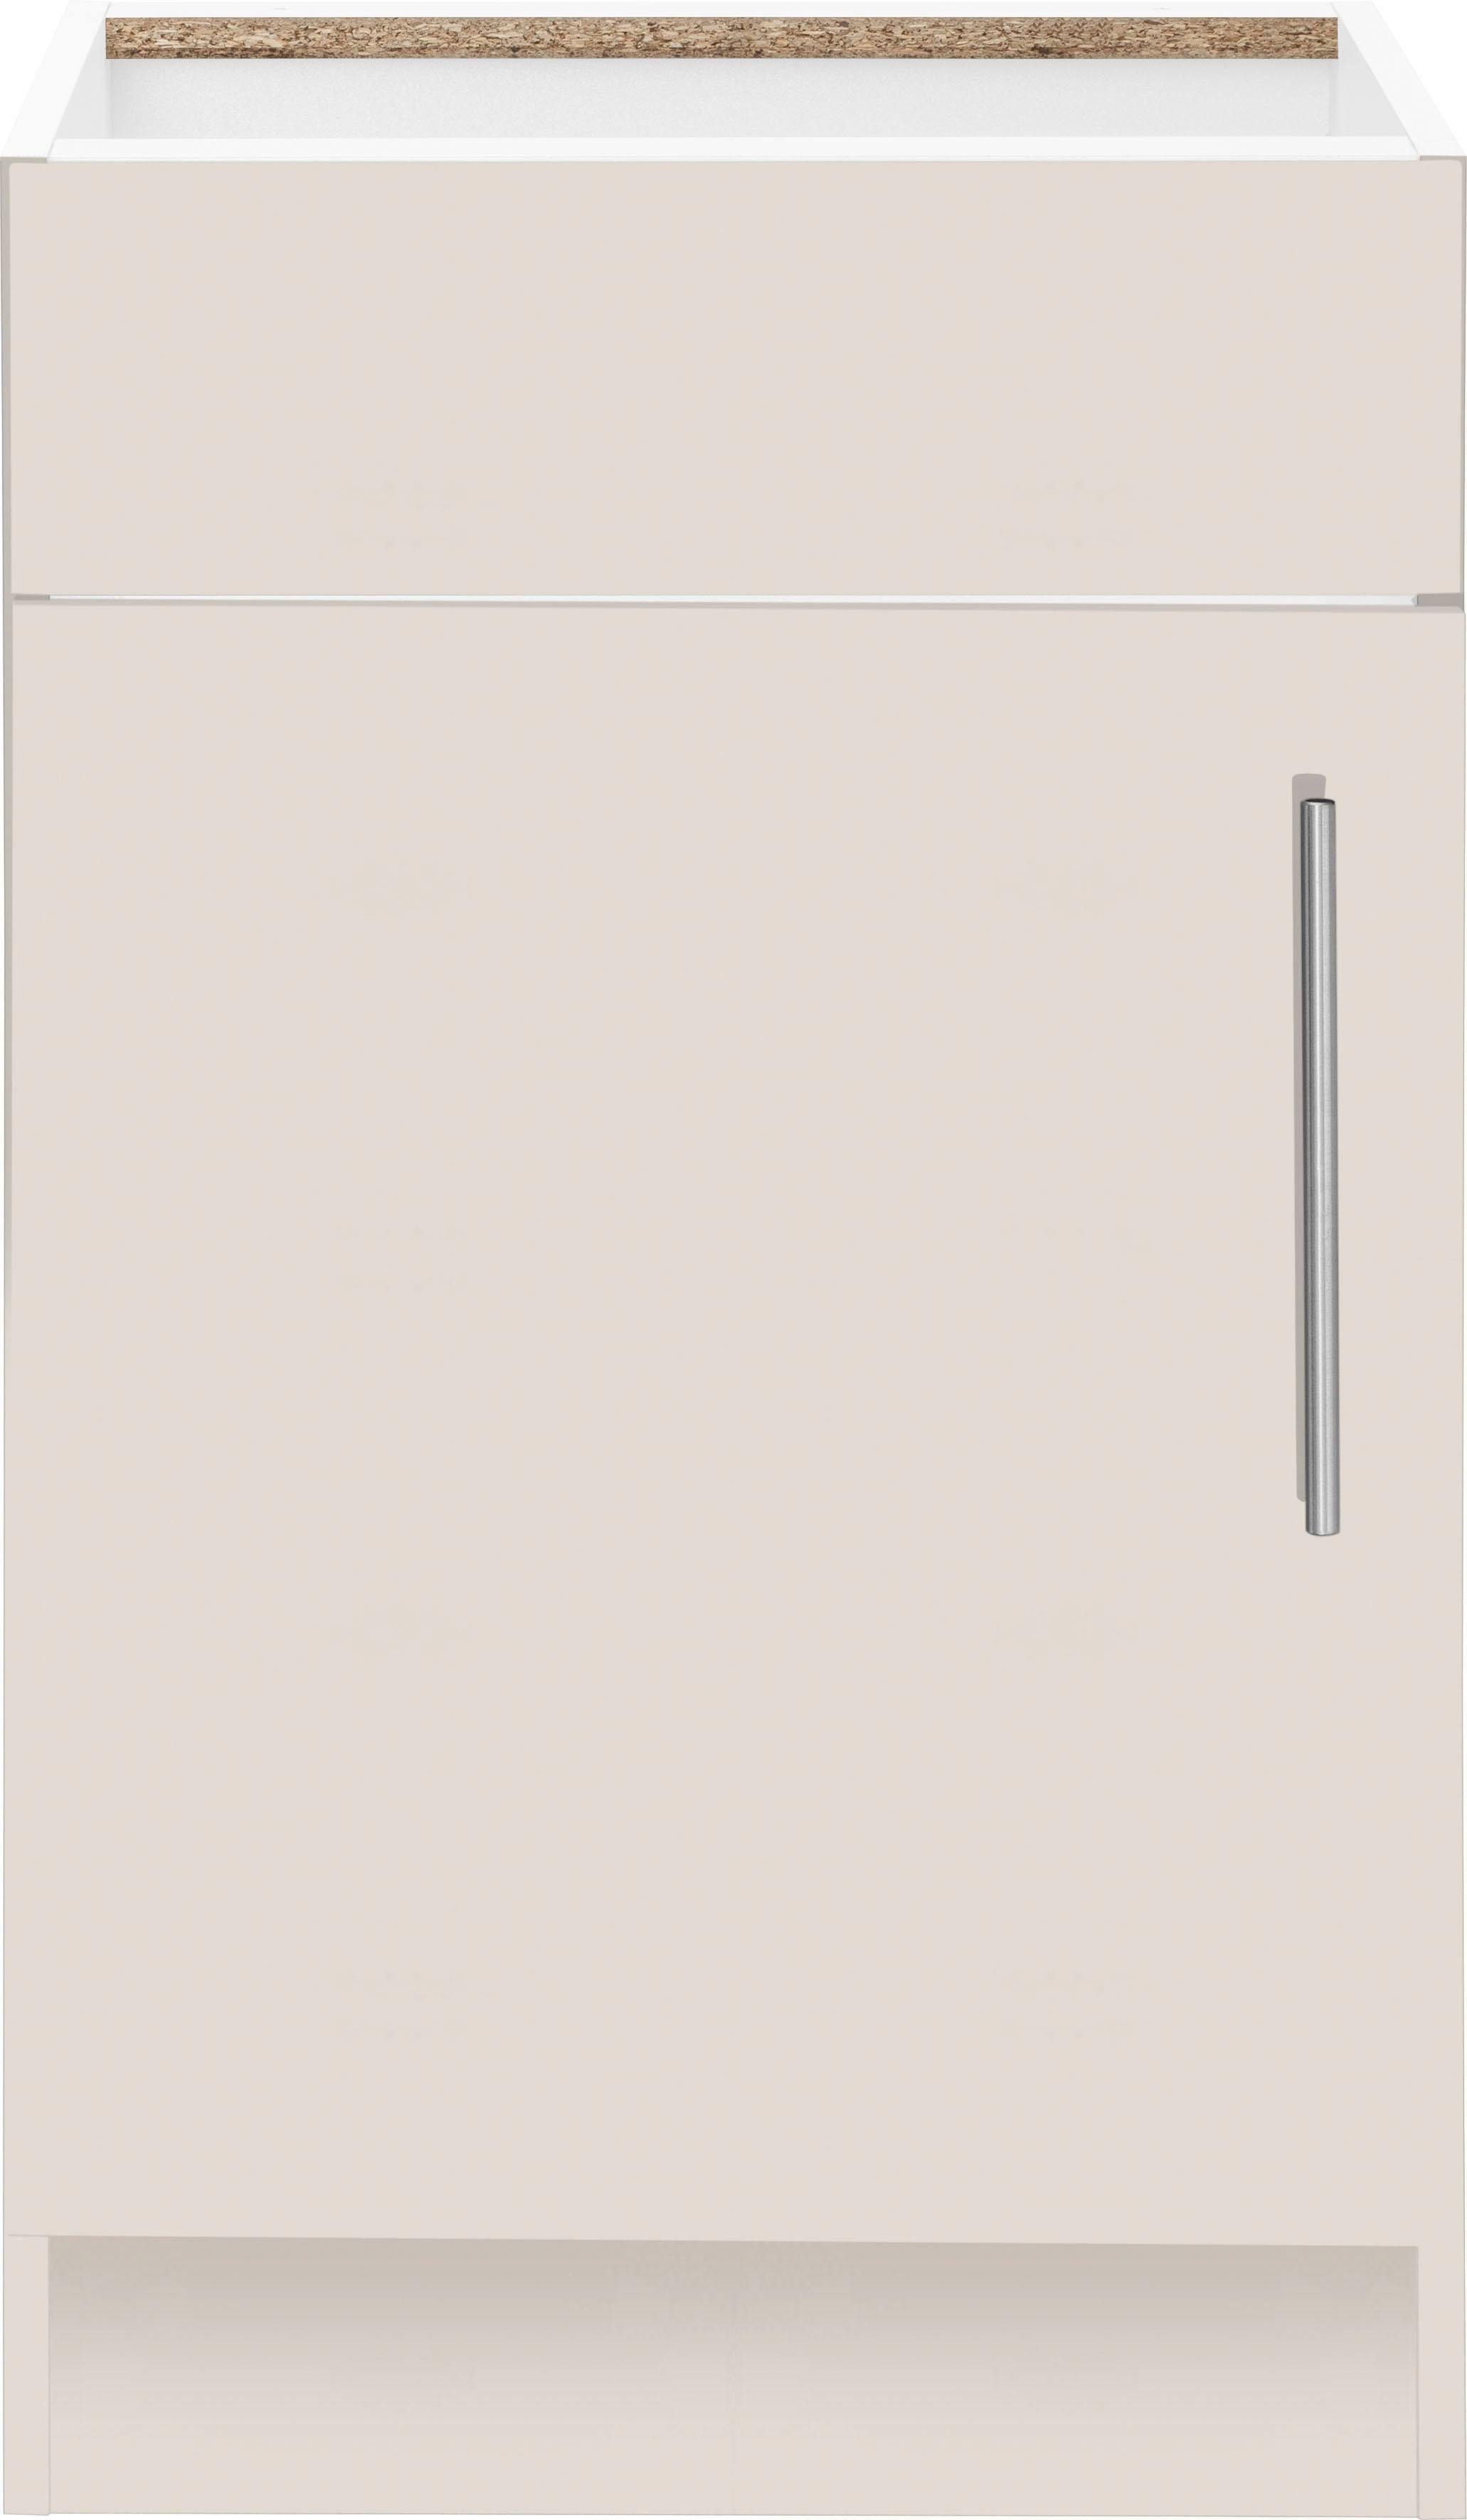 wiho Küchen Spülenschrank Cali 50 cm breit, ohne Arbeitsplatte Front und Korpus: Cashmere | Cashmere